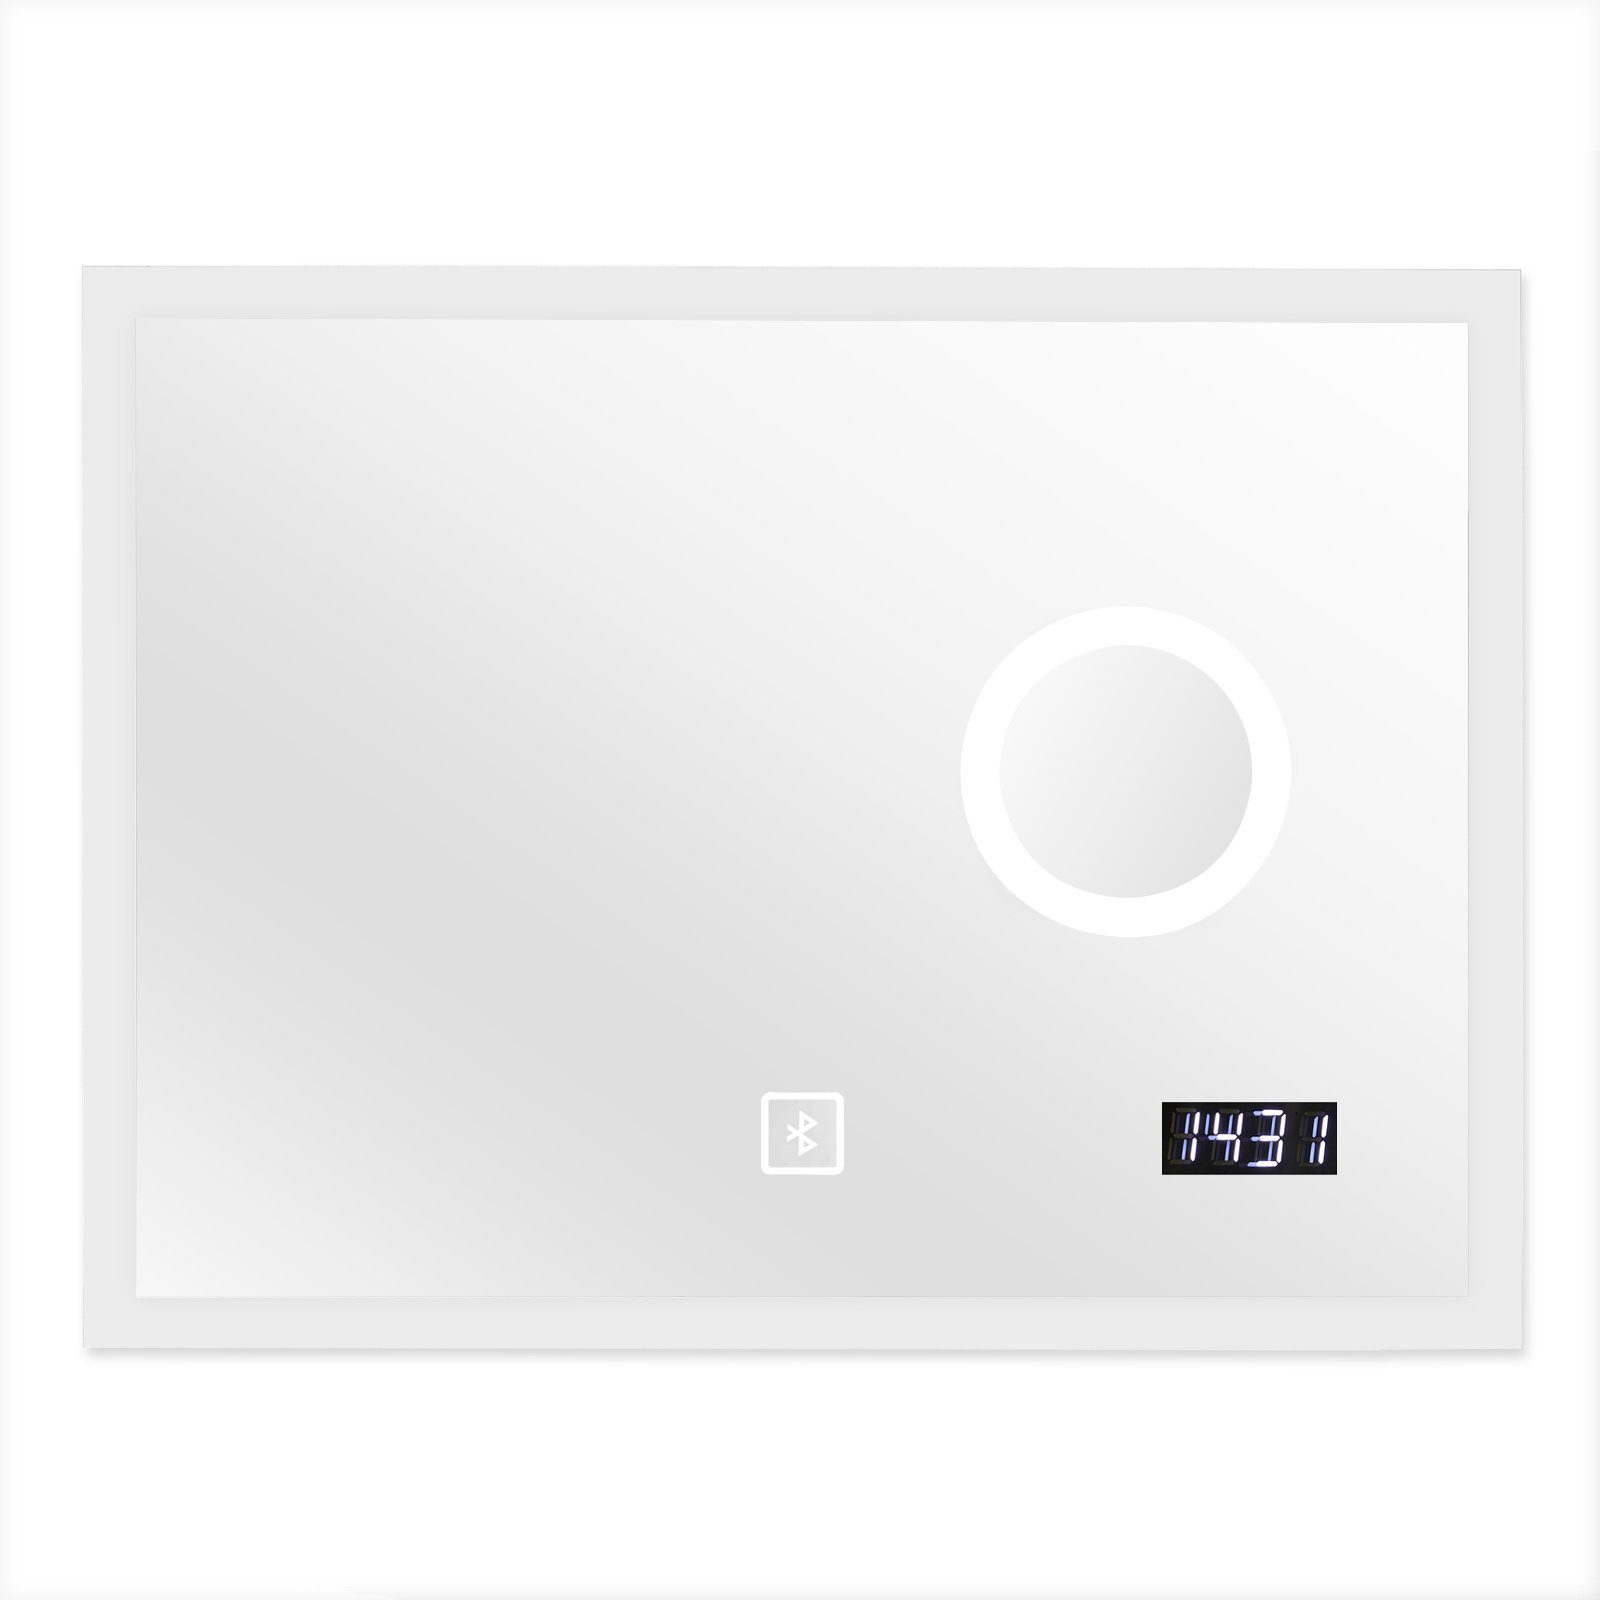 Aquamarin - LED Digitaluhr Badezimmerspiegelschrank Badspiegel Badezimmerspiegel Uhr, Kosmetikspiegel, Sprecher mit Touchschalter, -